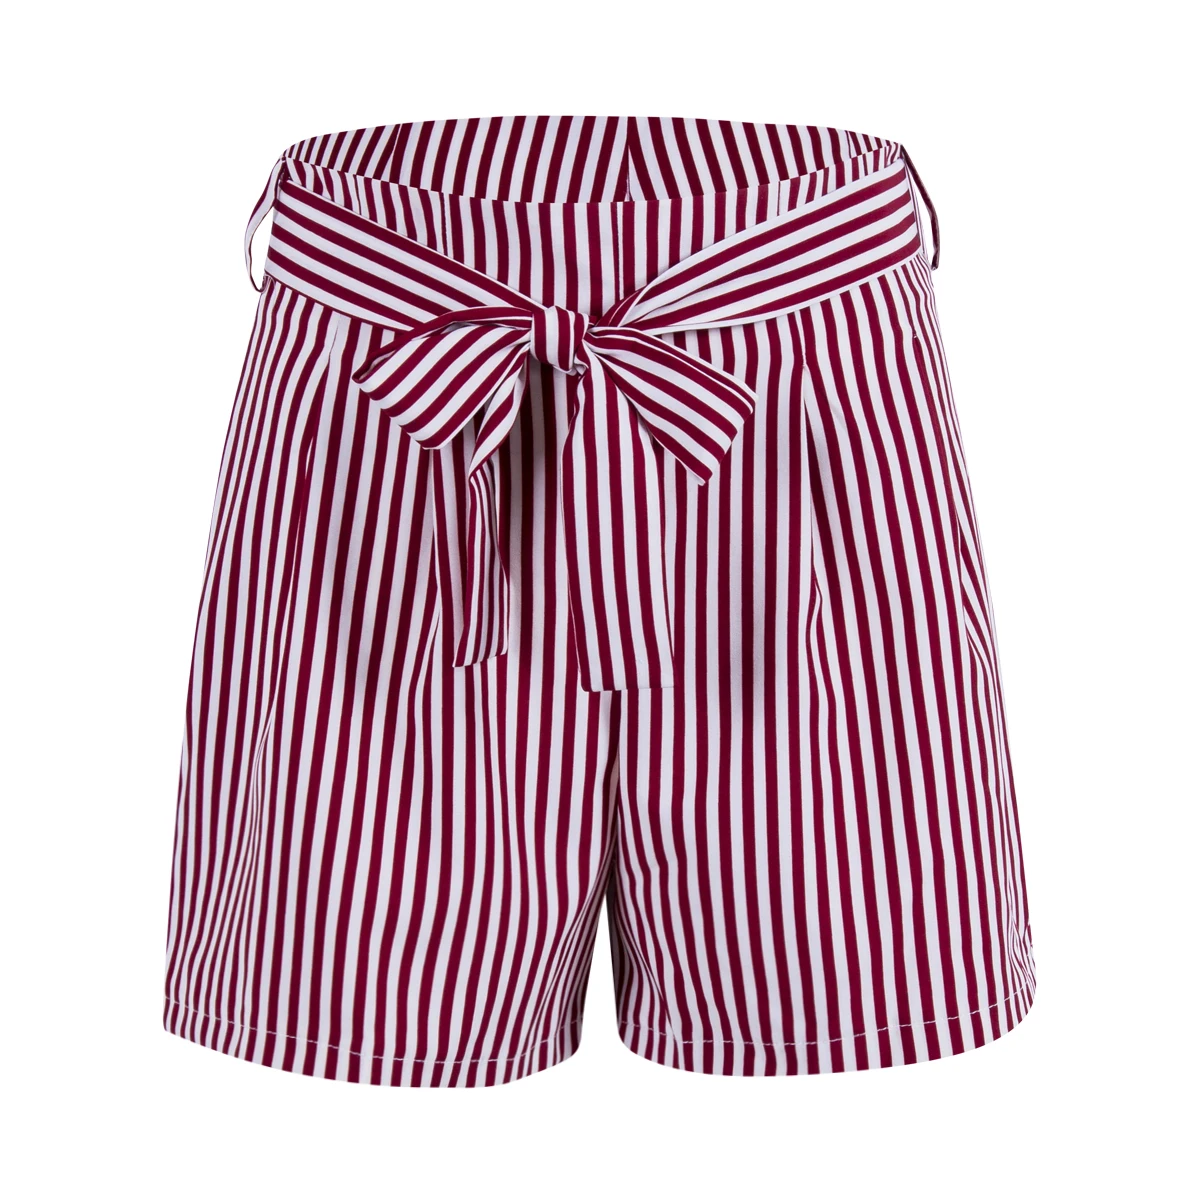 Для женщин's шорты для летние пикантные Лидер продаж повседневное пляжные высокая Талия Мини Короткие кружево до полосатый ж